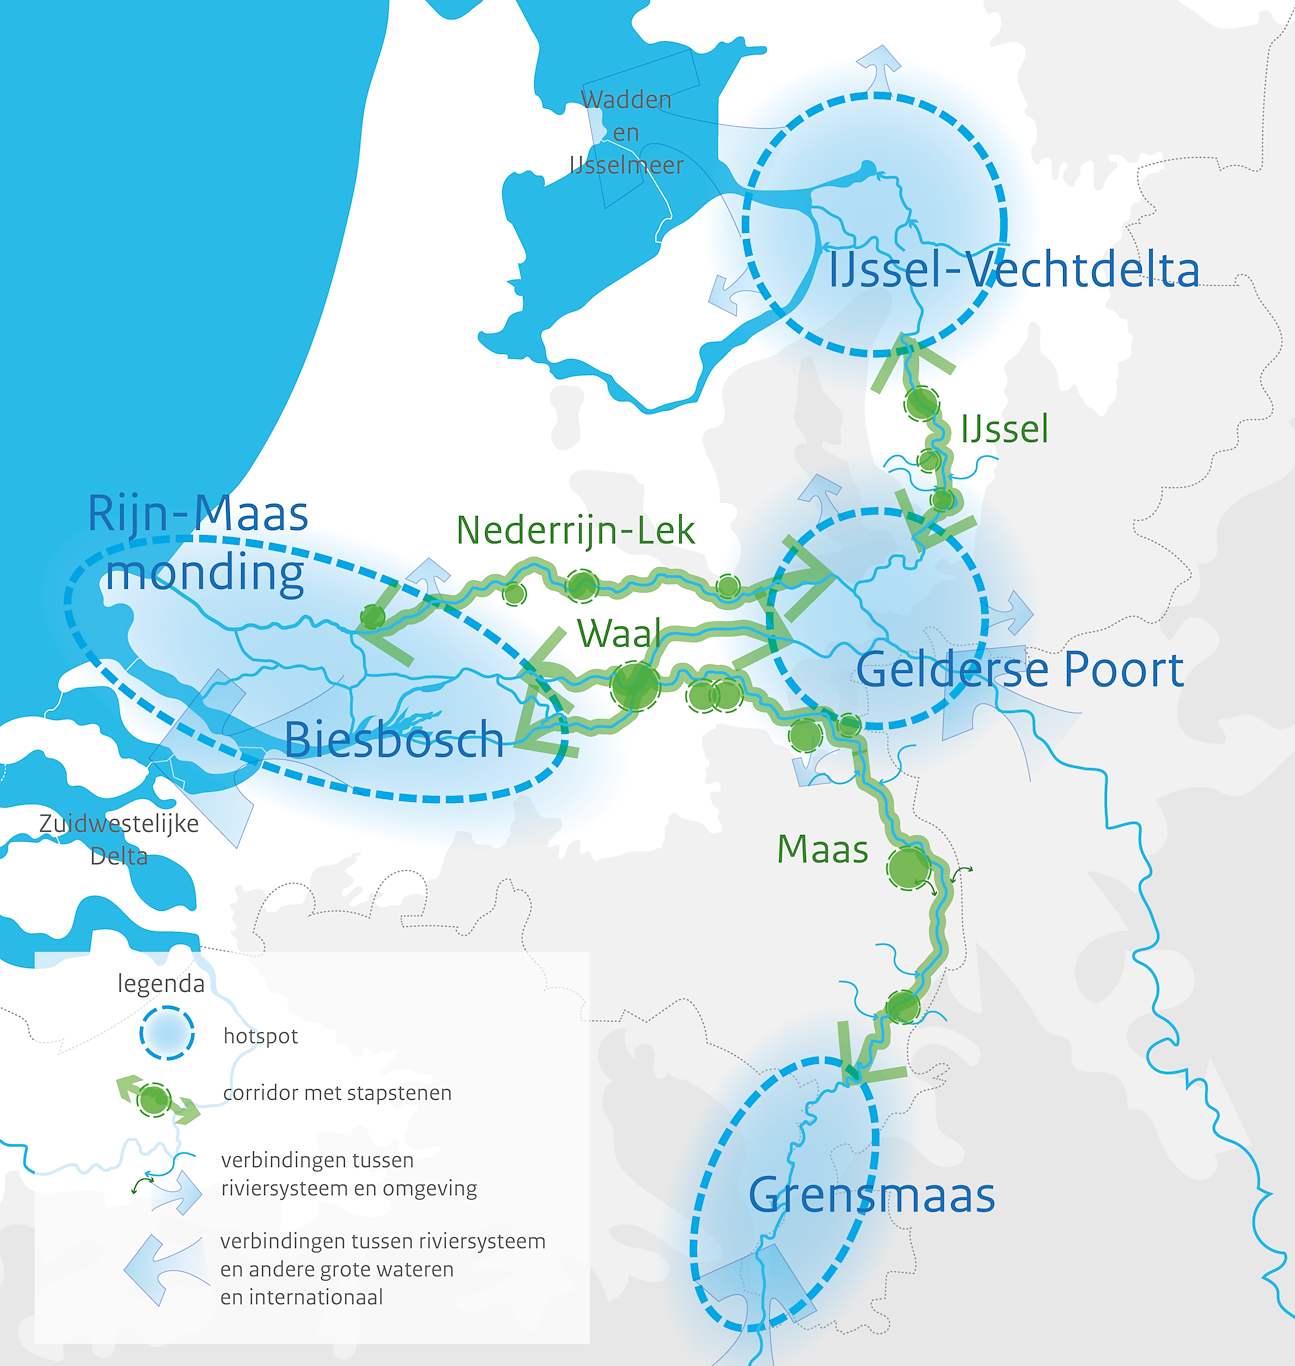 Deze afbeelding laat het natuurnetwerk Grote Rivieren van de PAGW zien langs de Maas en de Rijntakken zien. De vier kerngebieden zijn IJssel-Vechtdelta, Gelderse Poort, Biesbosch en Grensmaas.